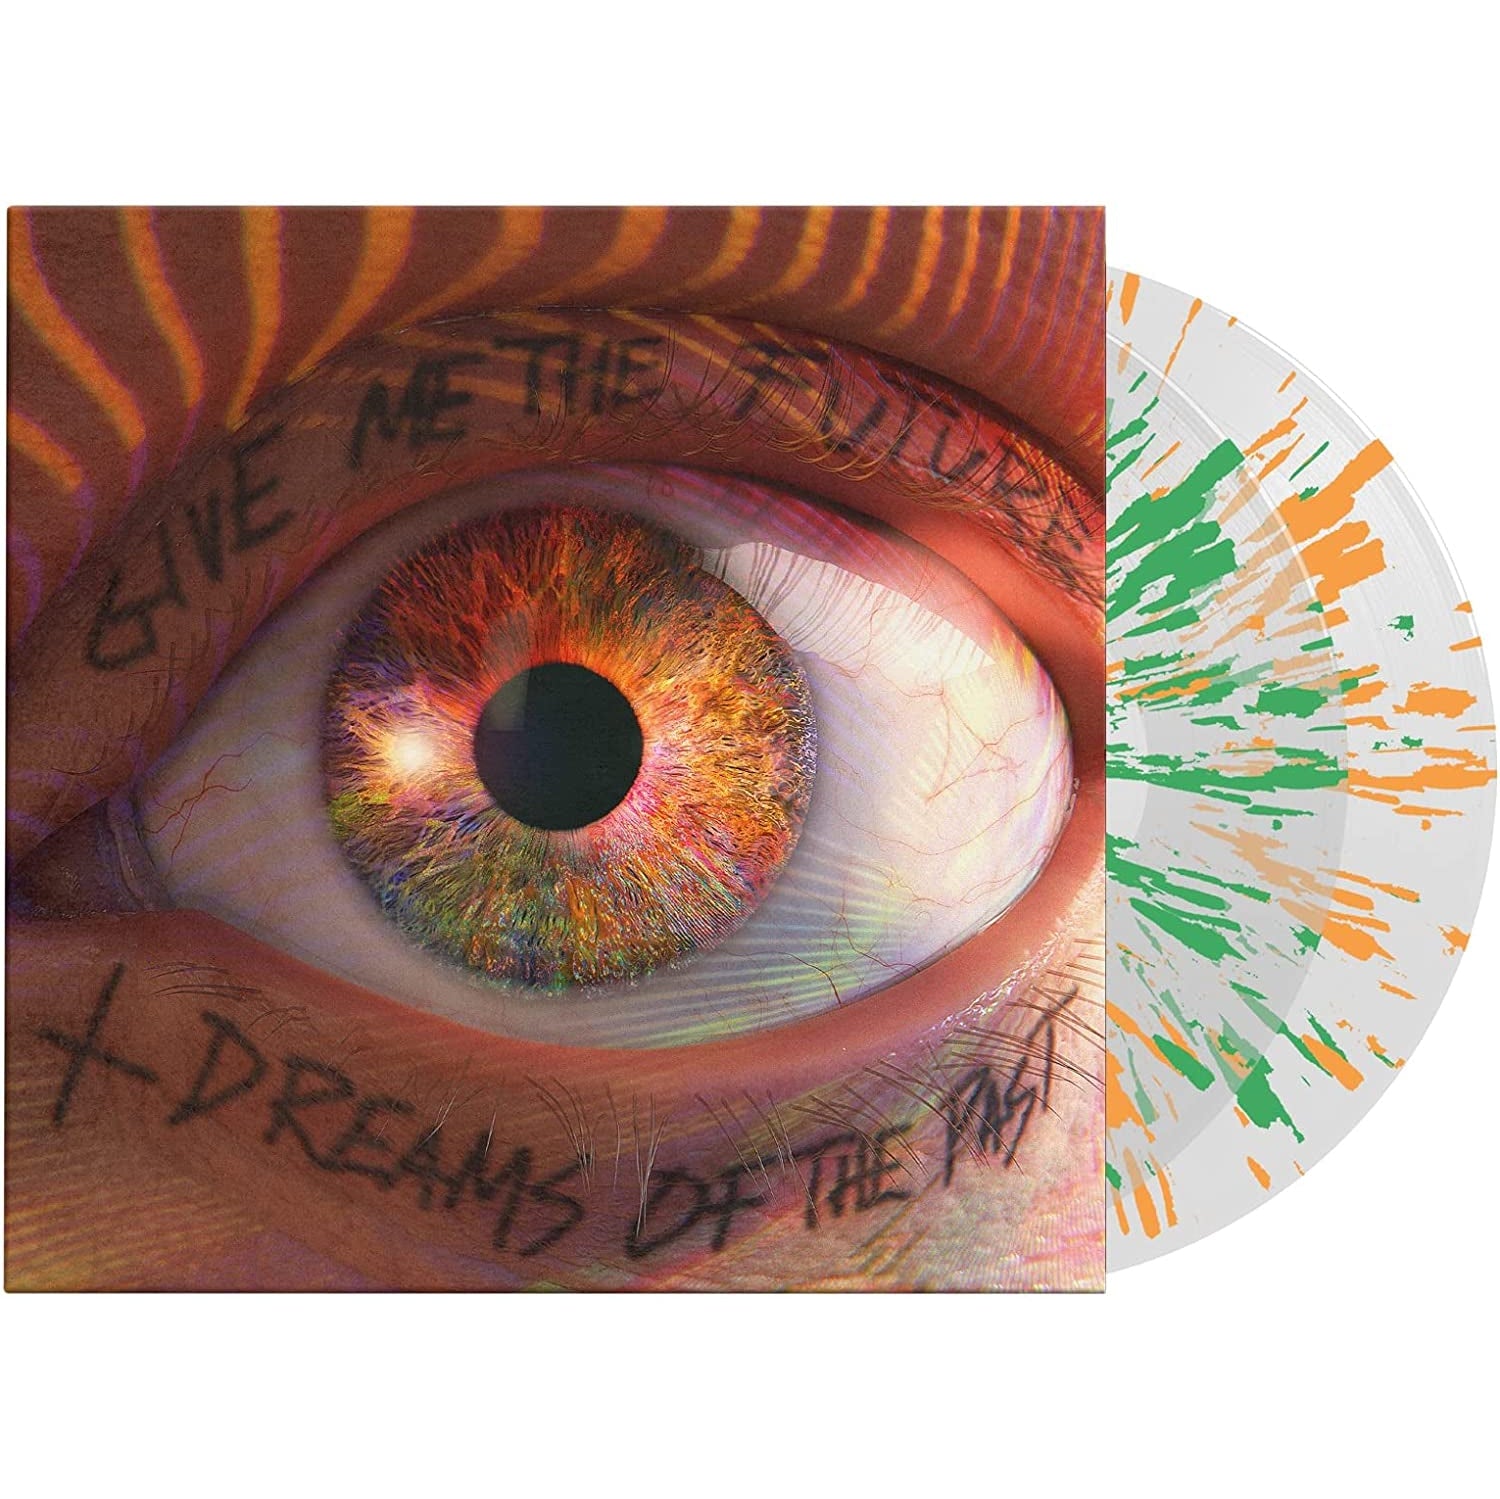 Give Me The Future + Dreams Of The Past (vinilo transparente con salpicaduras de naranja y verde)